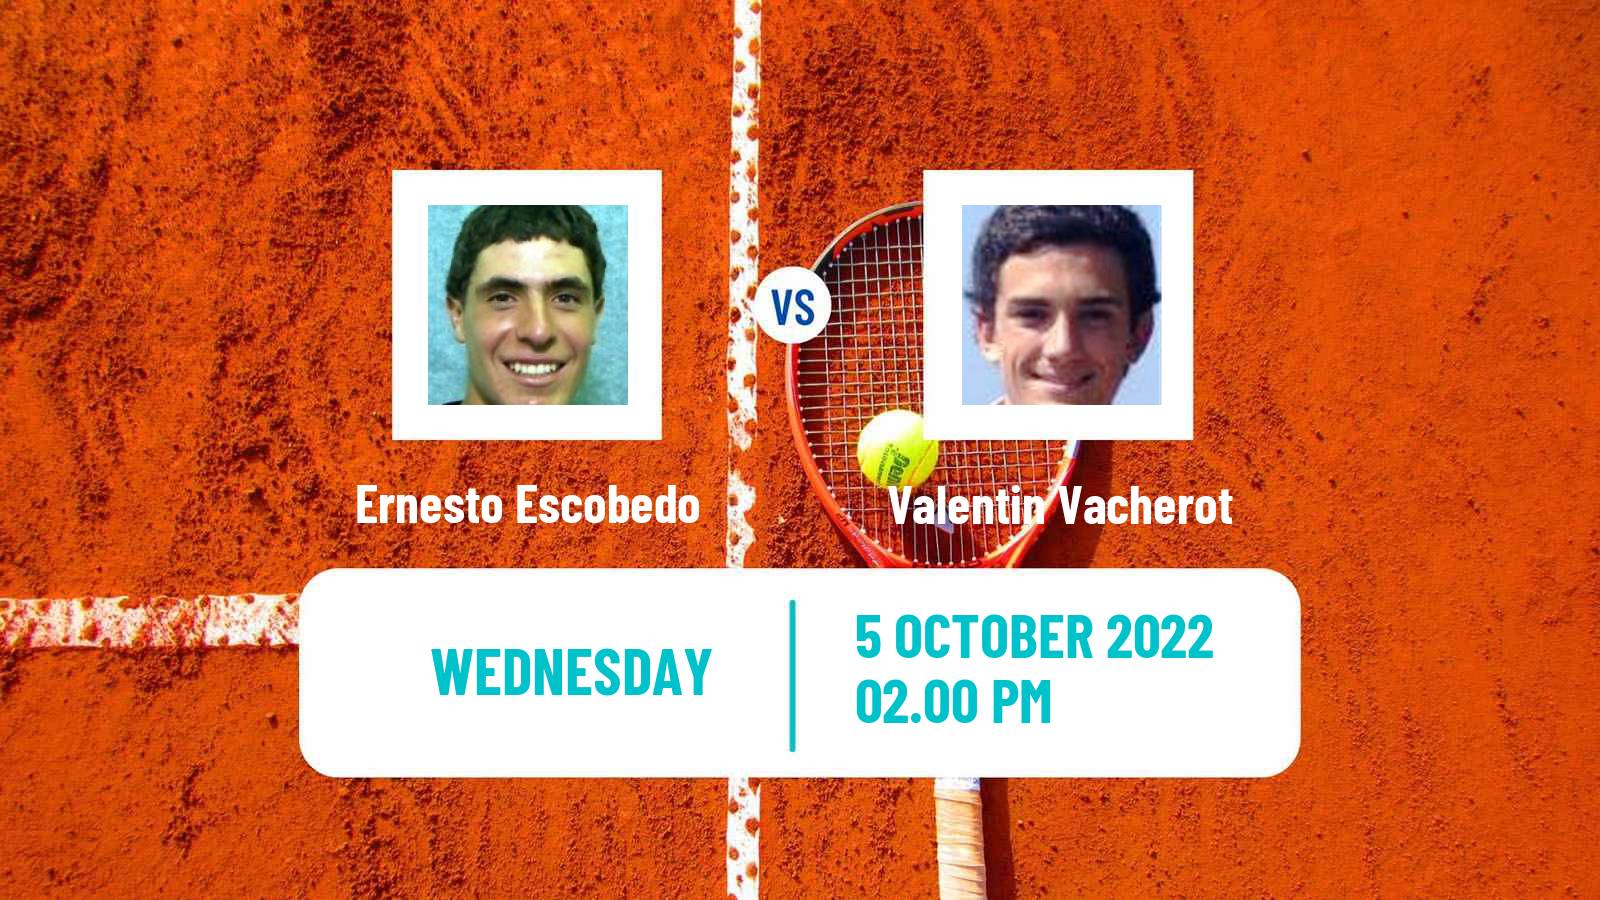 Tennis ATP Challenger Ernesto Escobedo - Valentin Vacherot